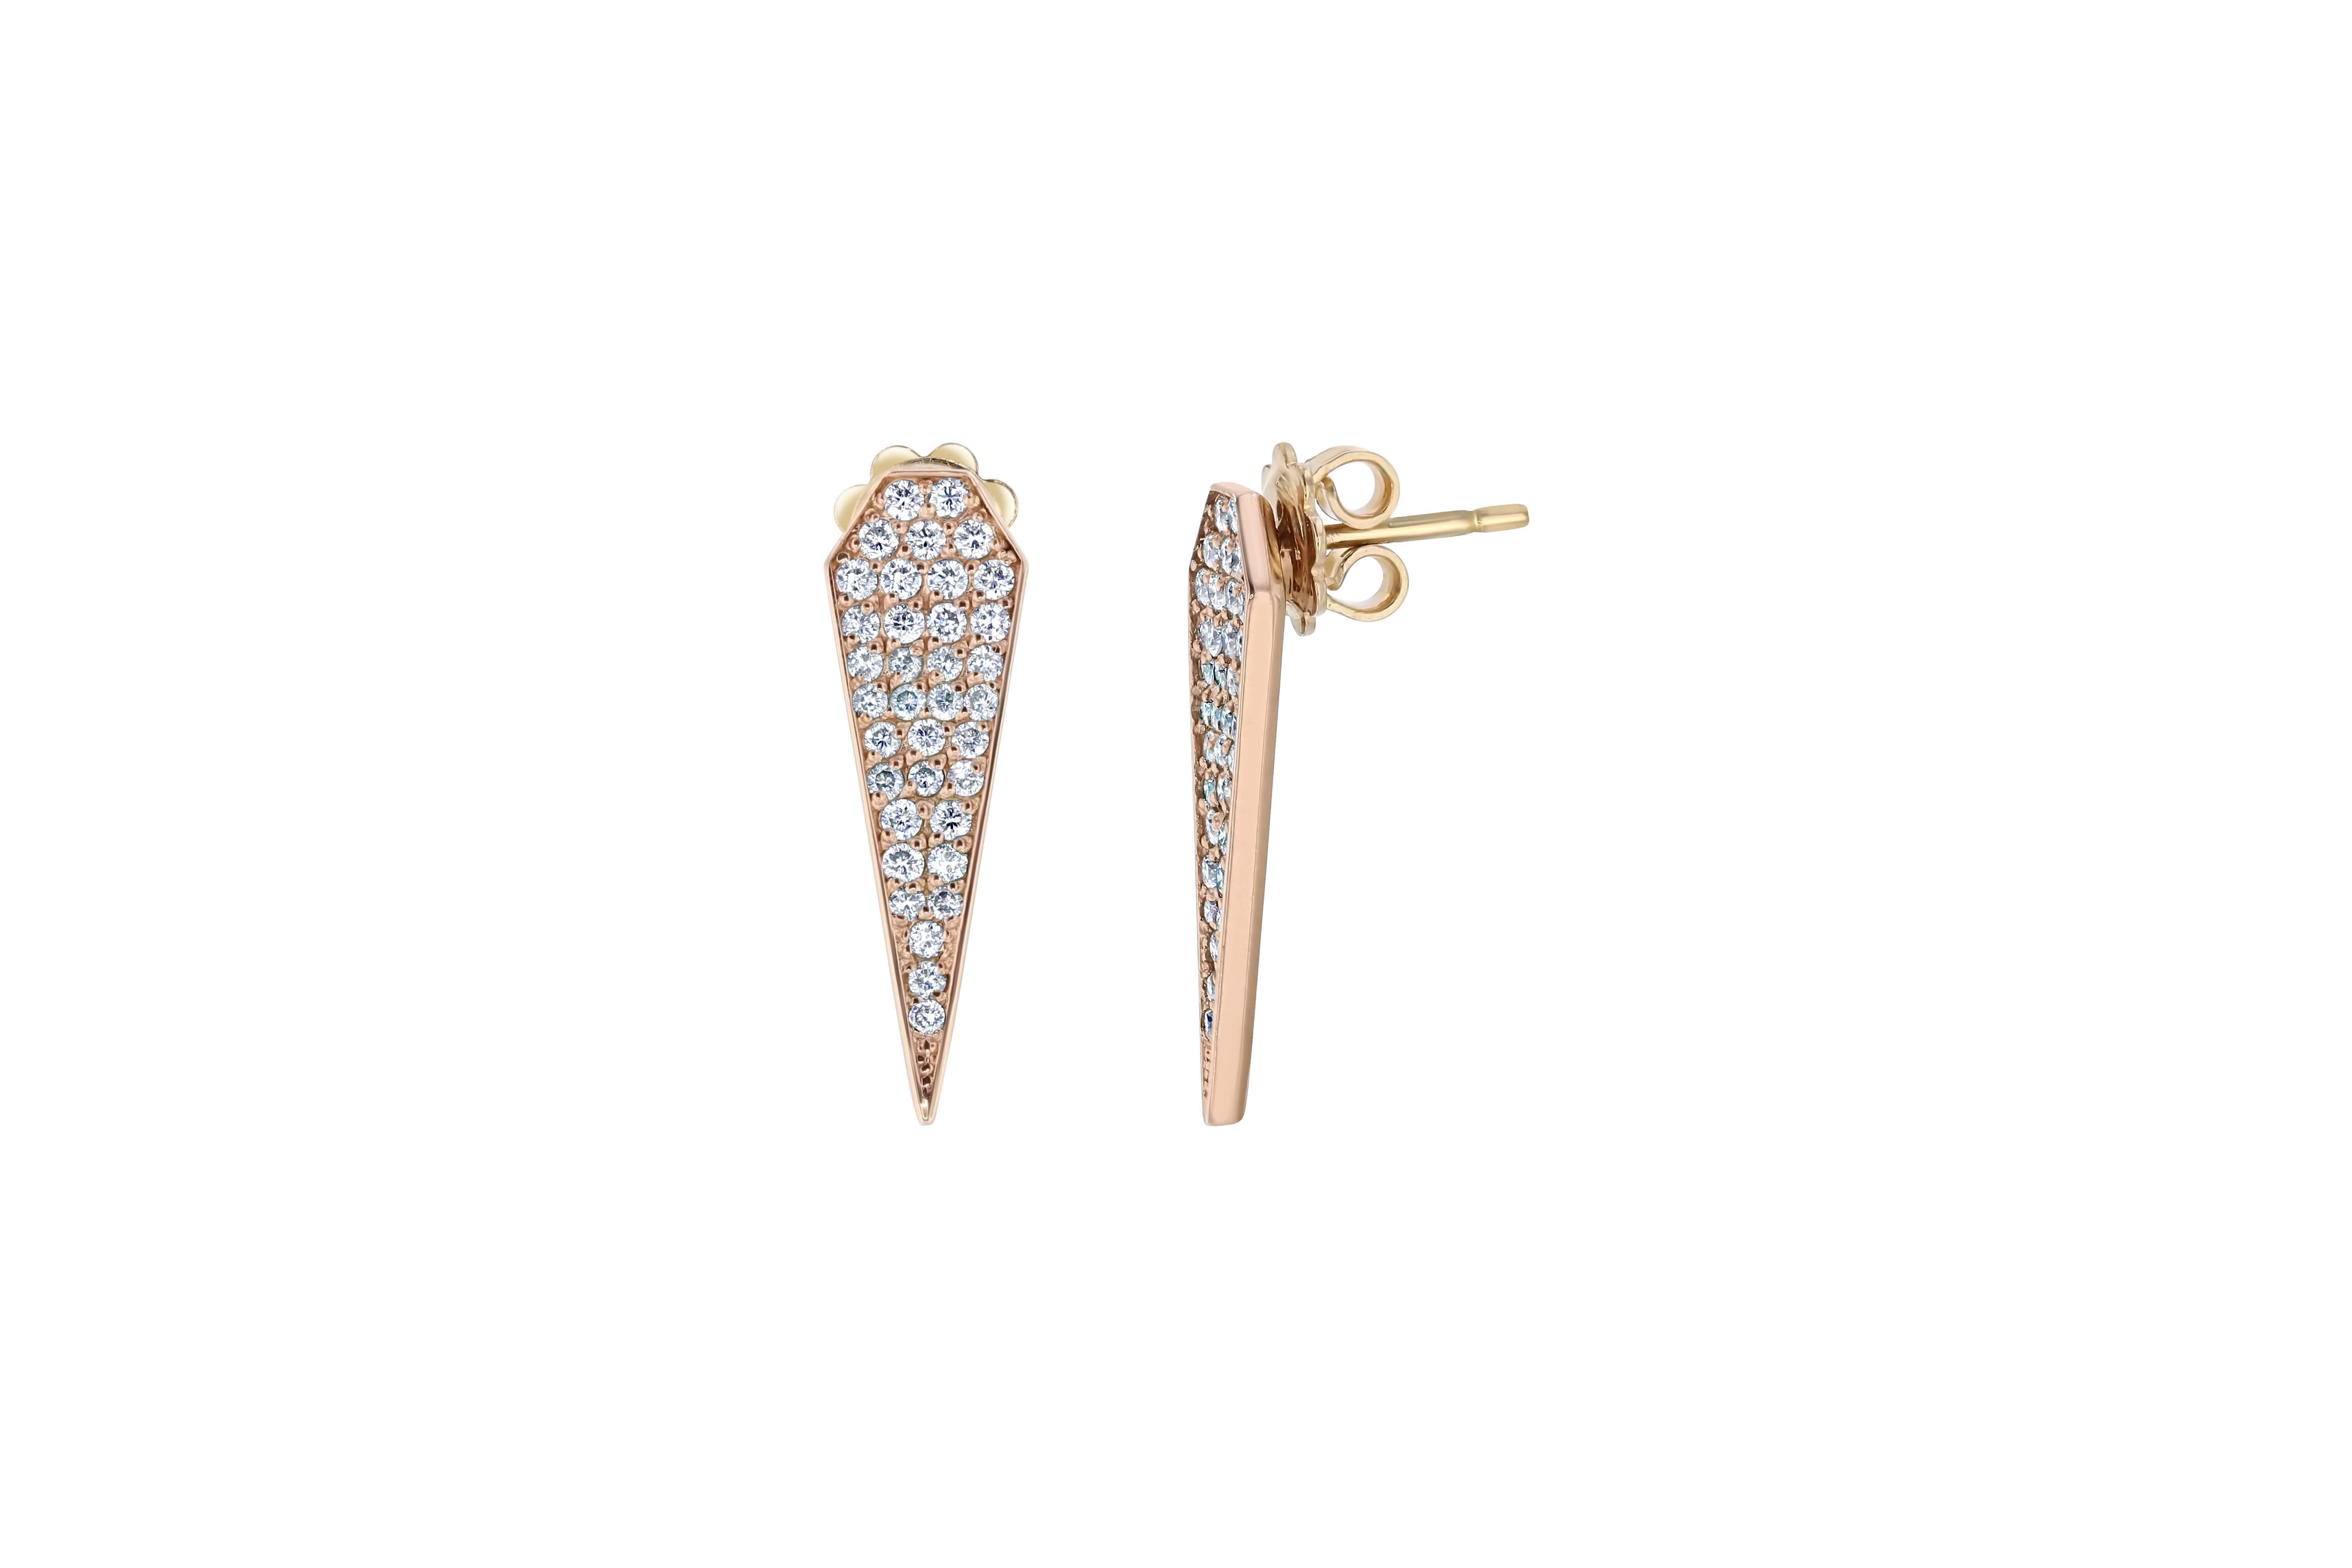 Le luxe abordable à son meilleur !  Ce modèle classique de boucles d'oreilles pendantes en diamant comporte 72 diamants de taille ronde pesant 0,82 carat (pureté : VS2, couleur : H).  La longueur est d'un peu moins d'un pouce et est accompagnée d'un